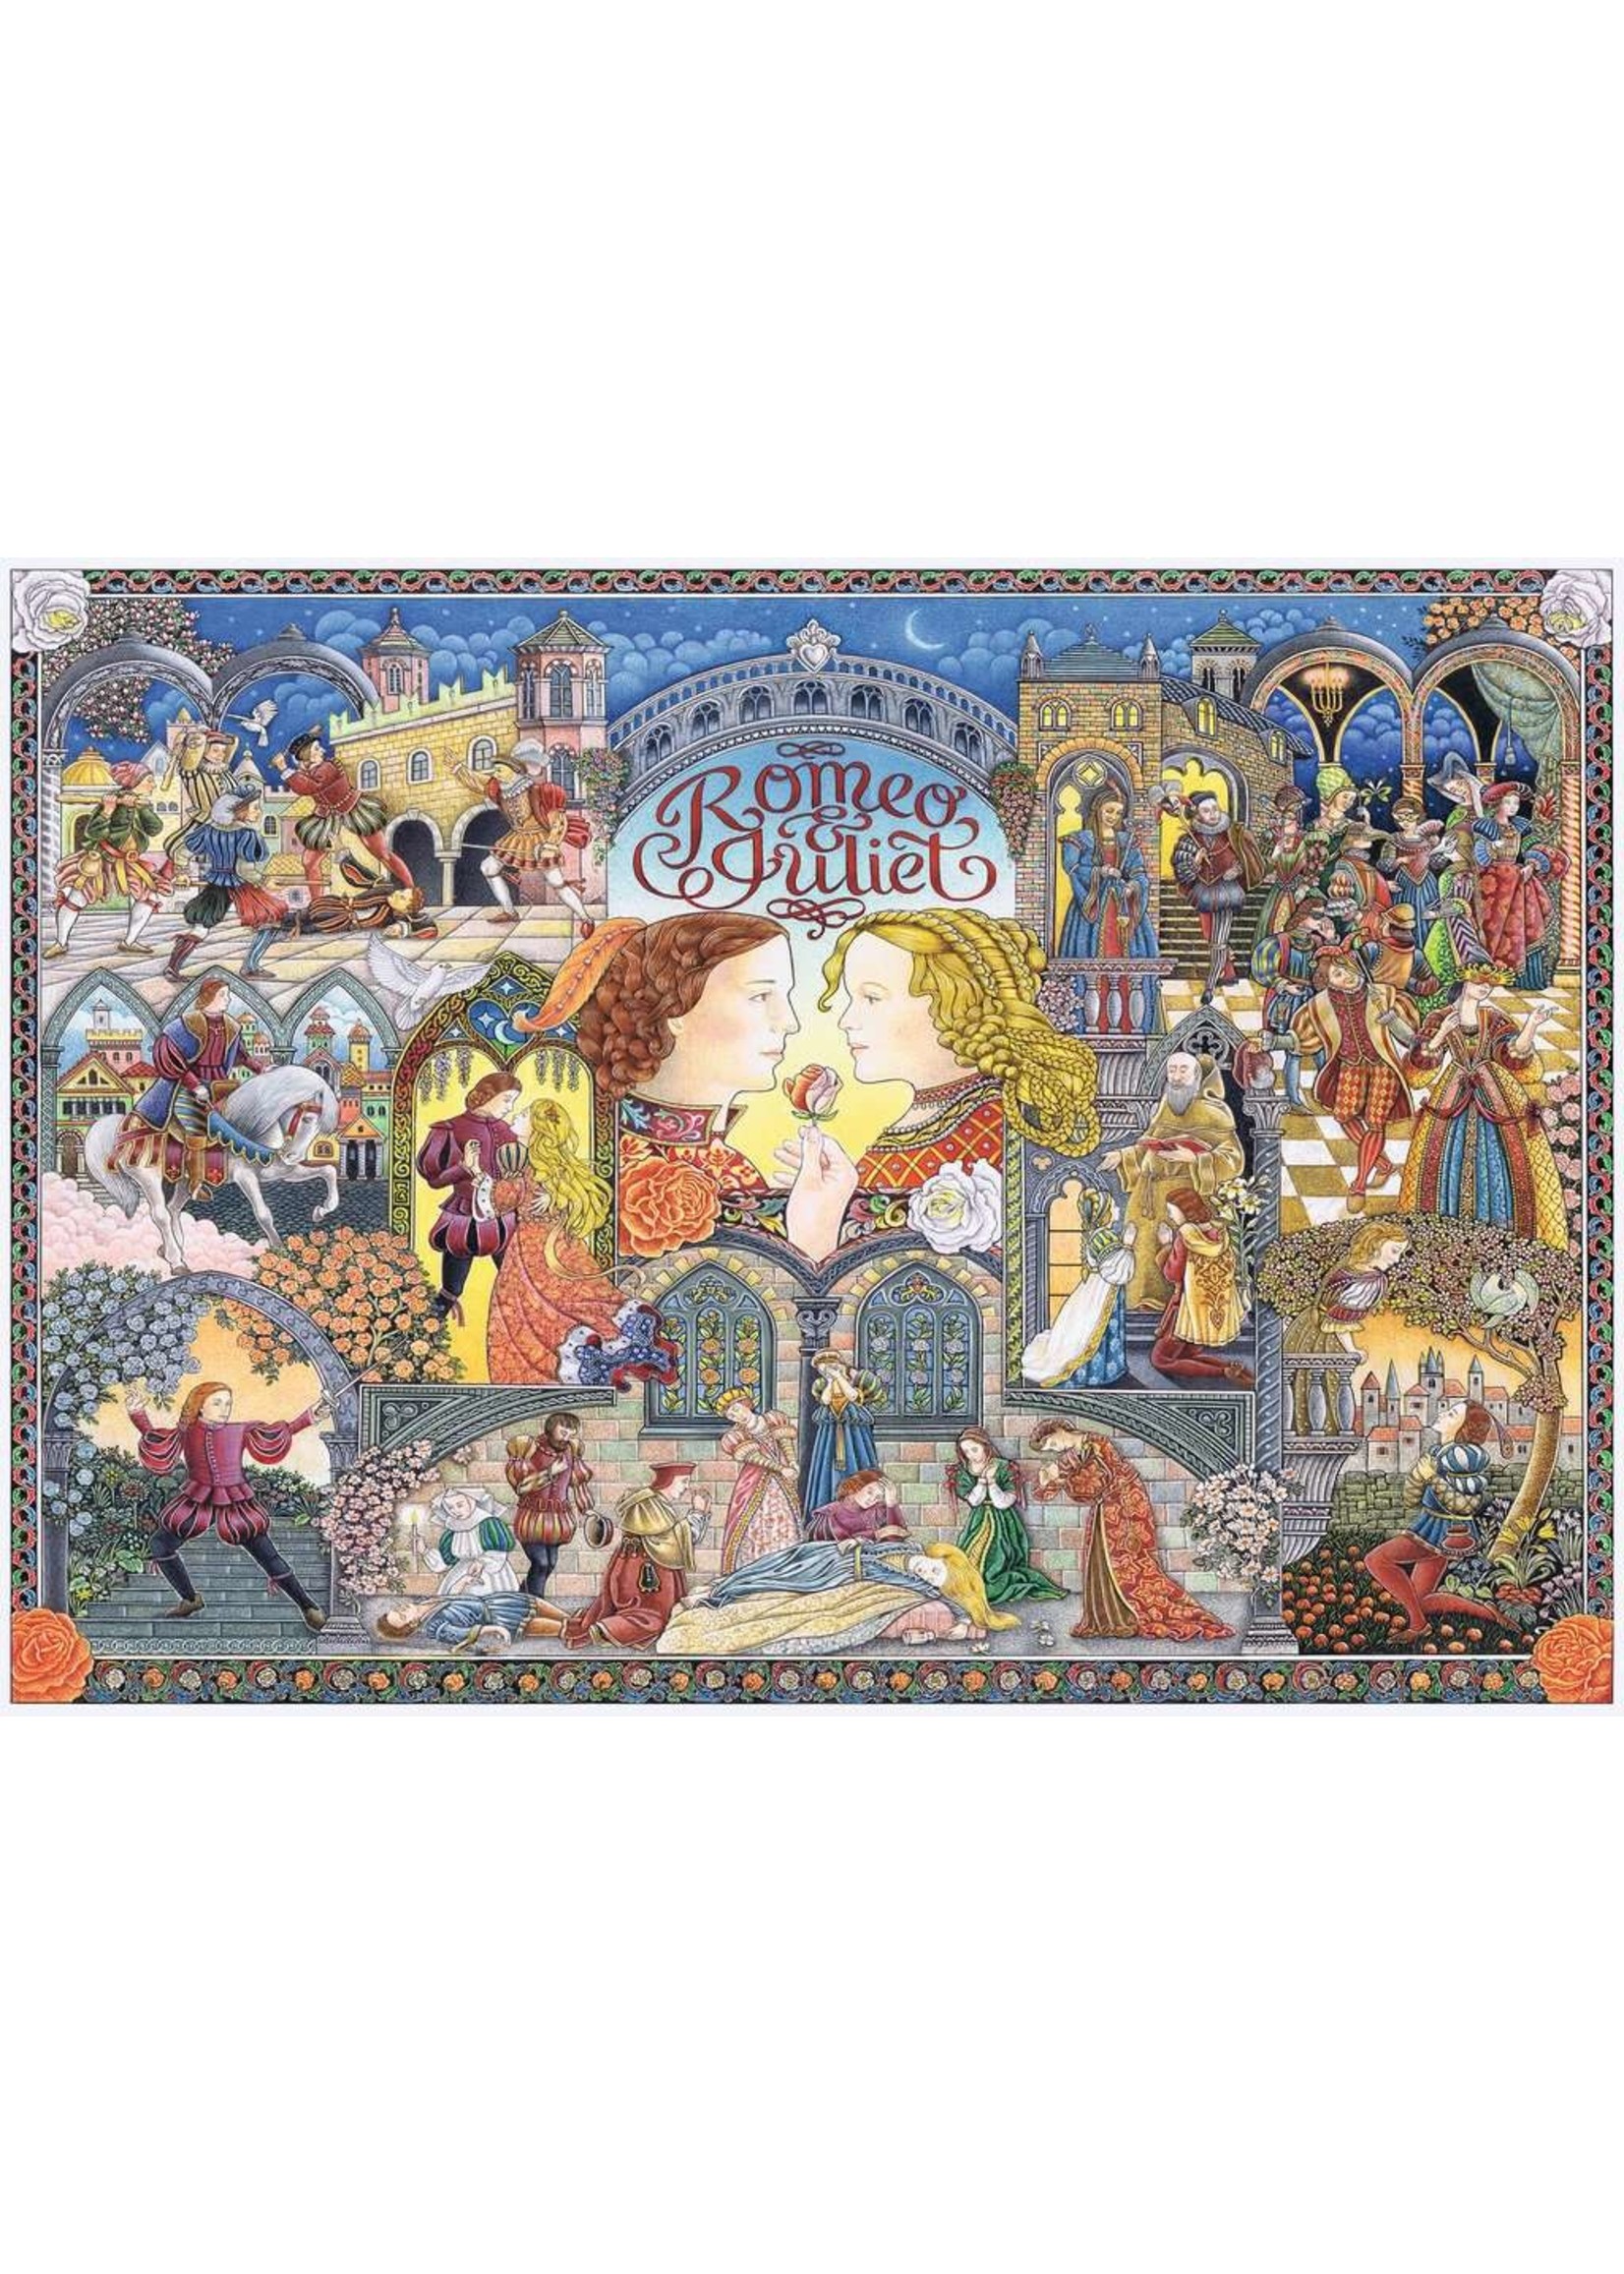 Ravensburger Romeo & Juliet - 1000 Piece Puzzle